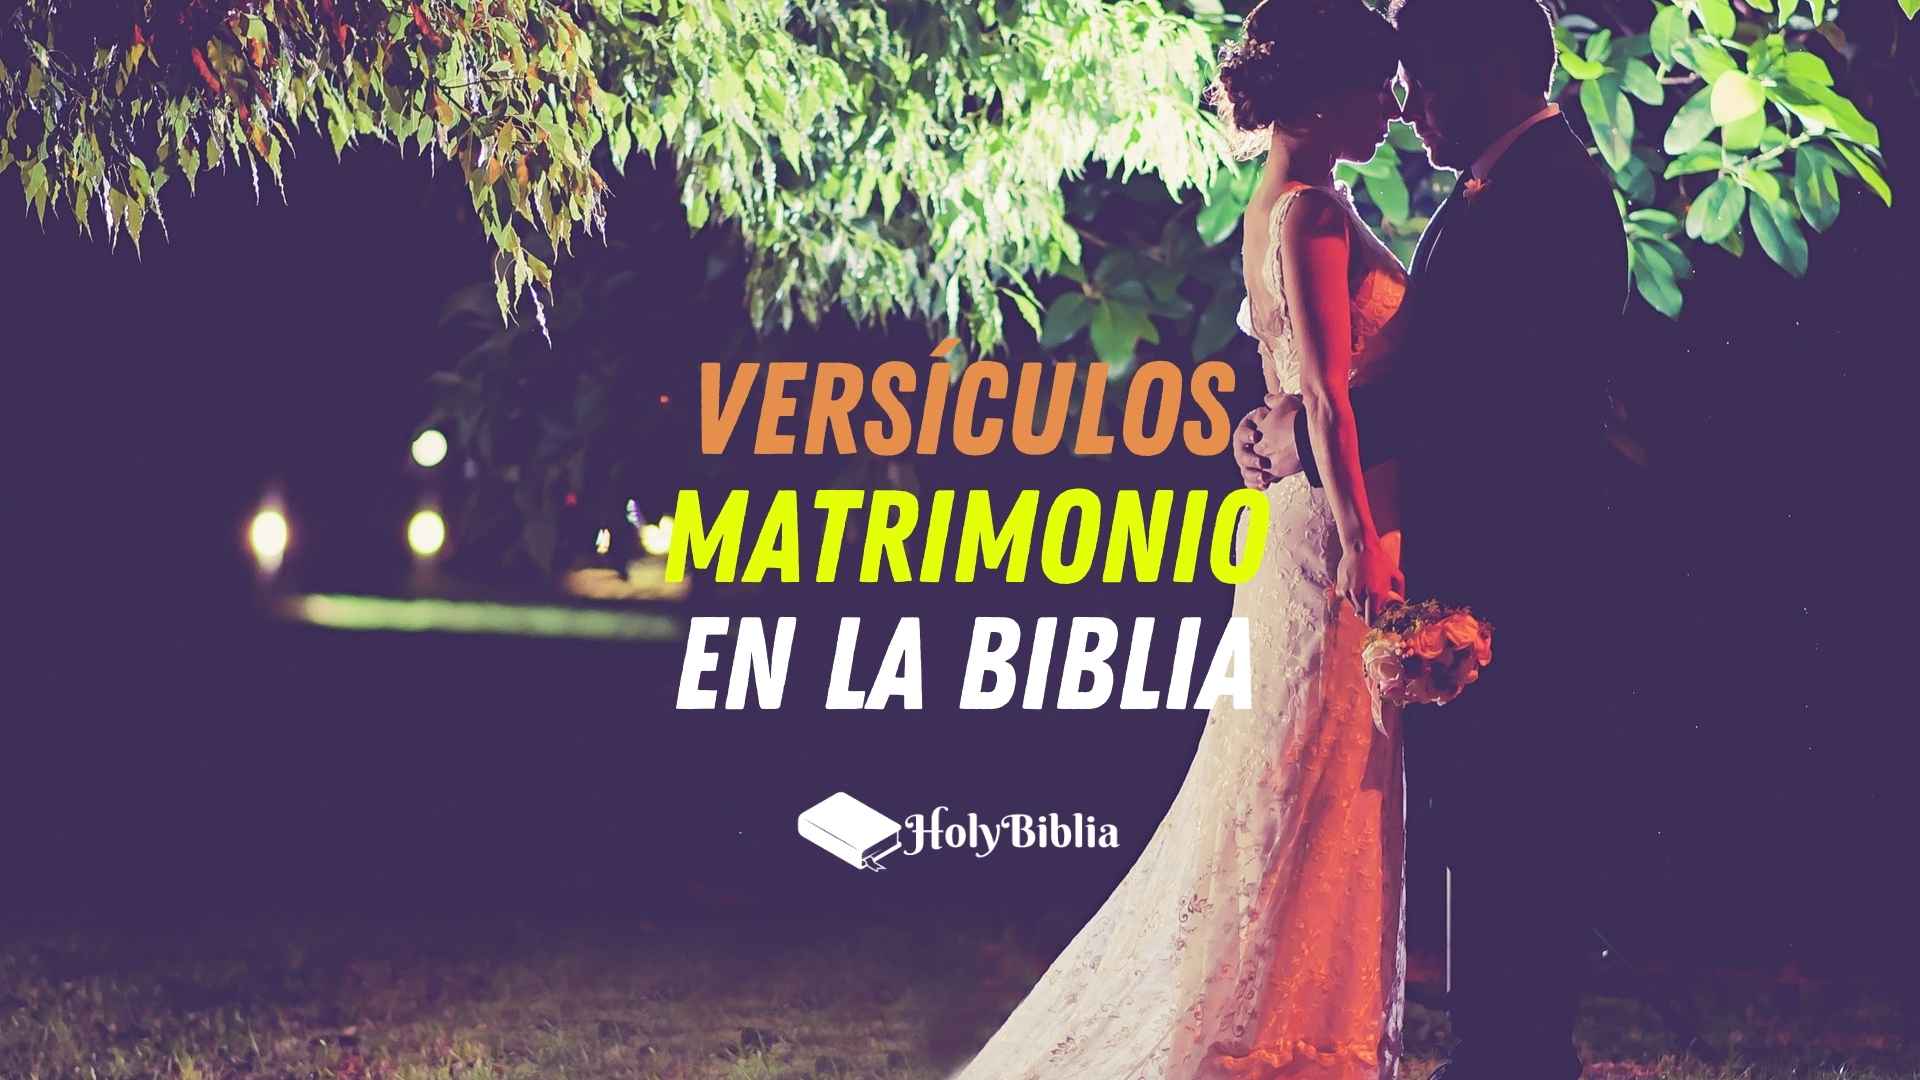 Versículos Matrimonio en la Biblia